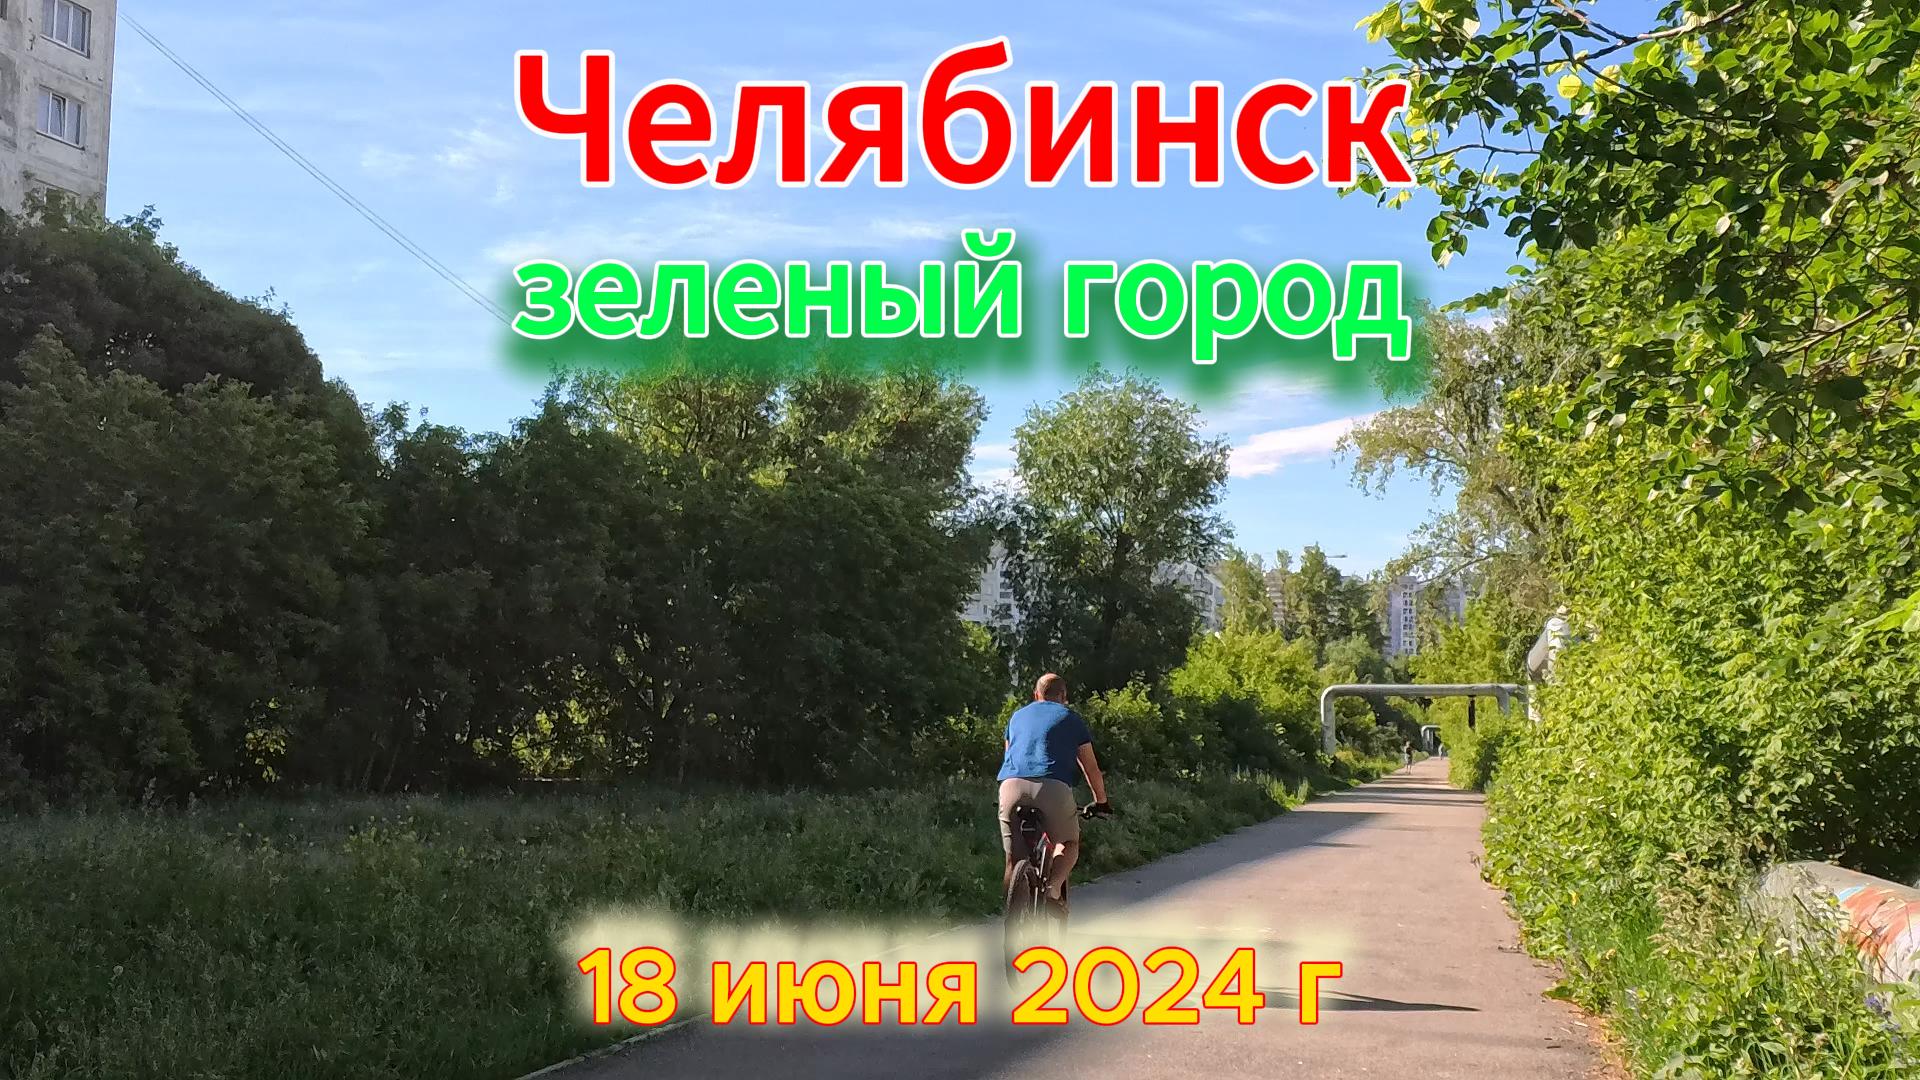 Зеленый город Челябинск в середине июня 18 июня 2024 г